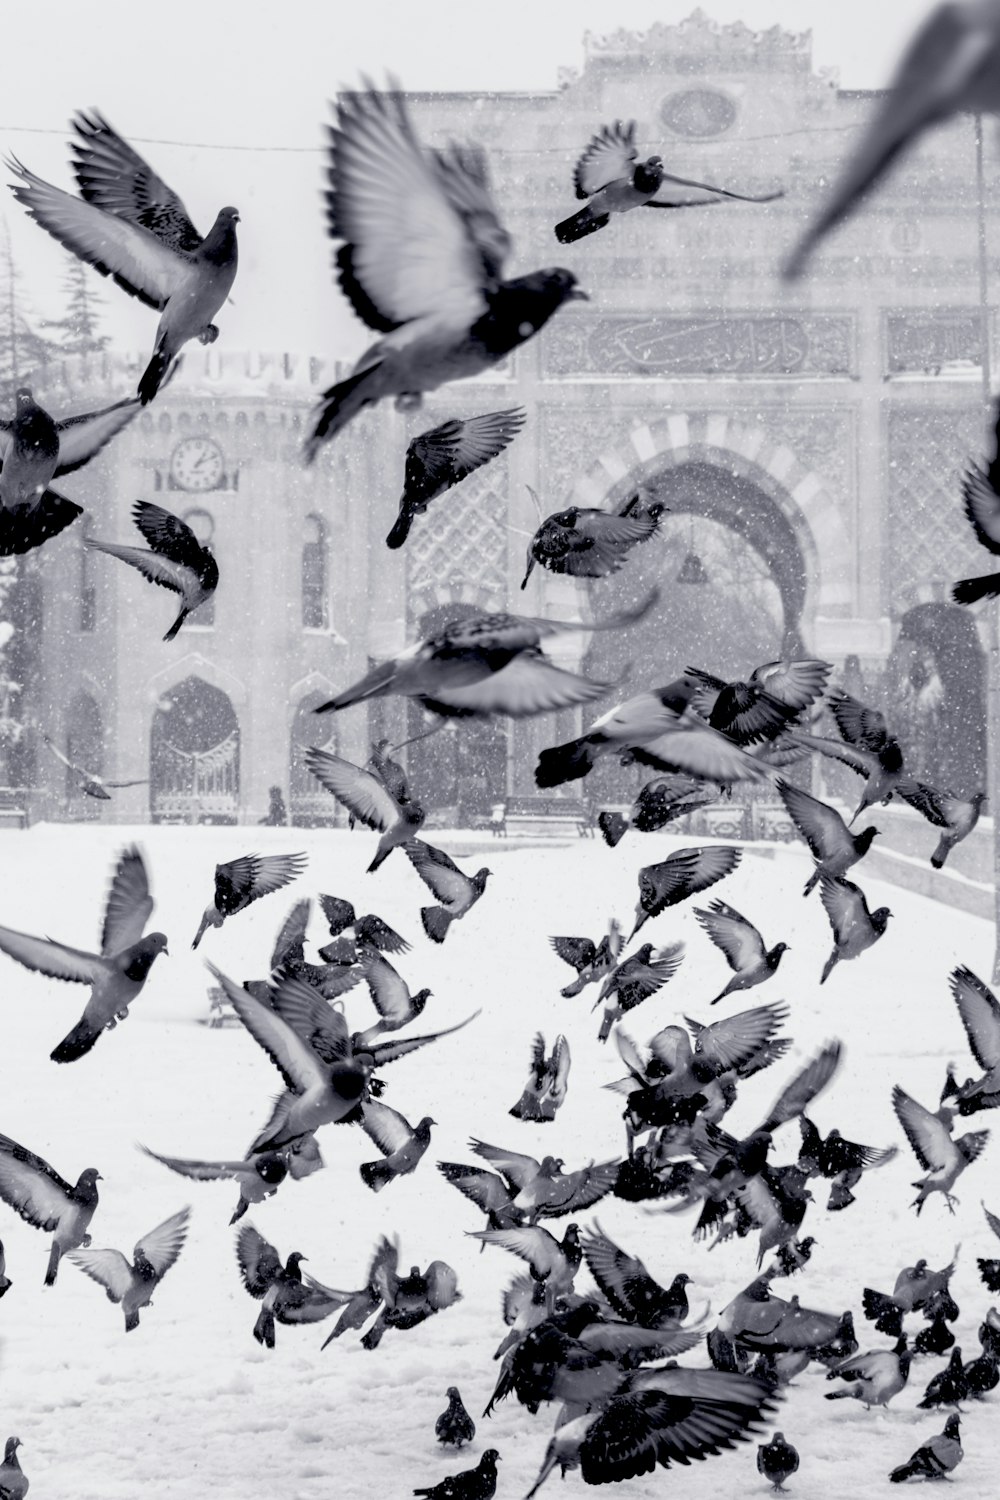 pigeons volant au-dessus d’un champ enneigé